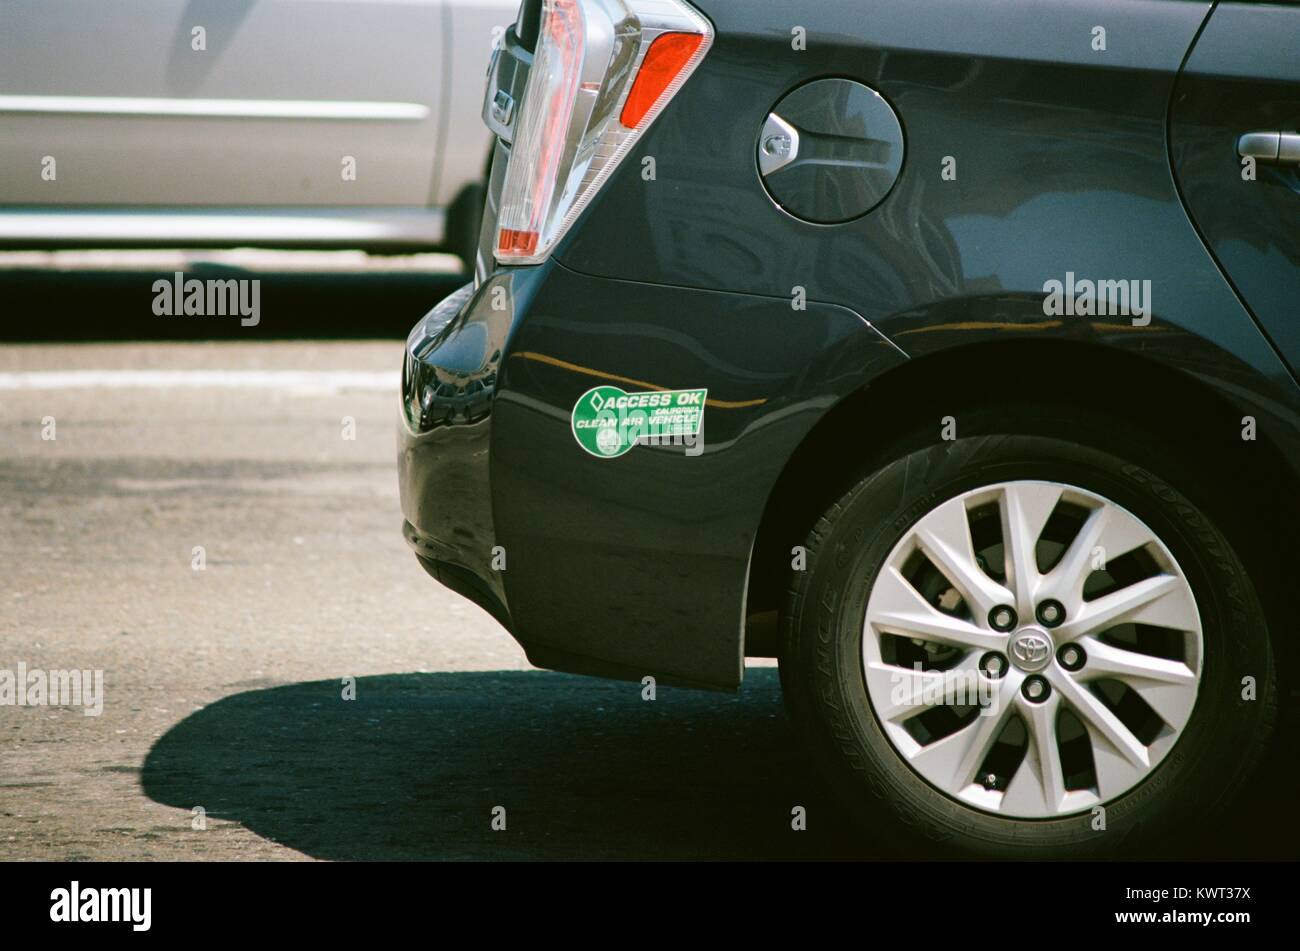 Nahaufnahme der Zugang Ok, Kalifornien saubere Luft Fahrzeug Aufkleber auf der Stoßstange eines schwarzen Toyota Automobile, der anzeigt, dass das Automobil in carpool Lanes fahren können, Silicon Valley, San Jose, Kalifornien, 17. August 2017. Stockfoto